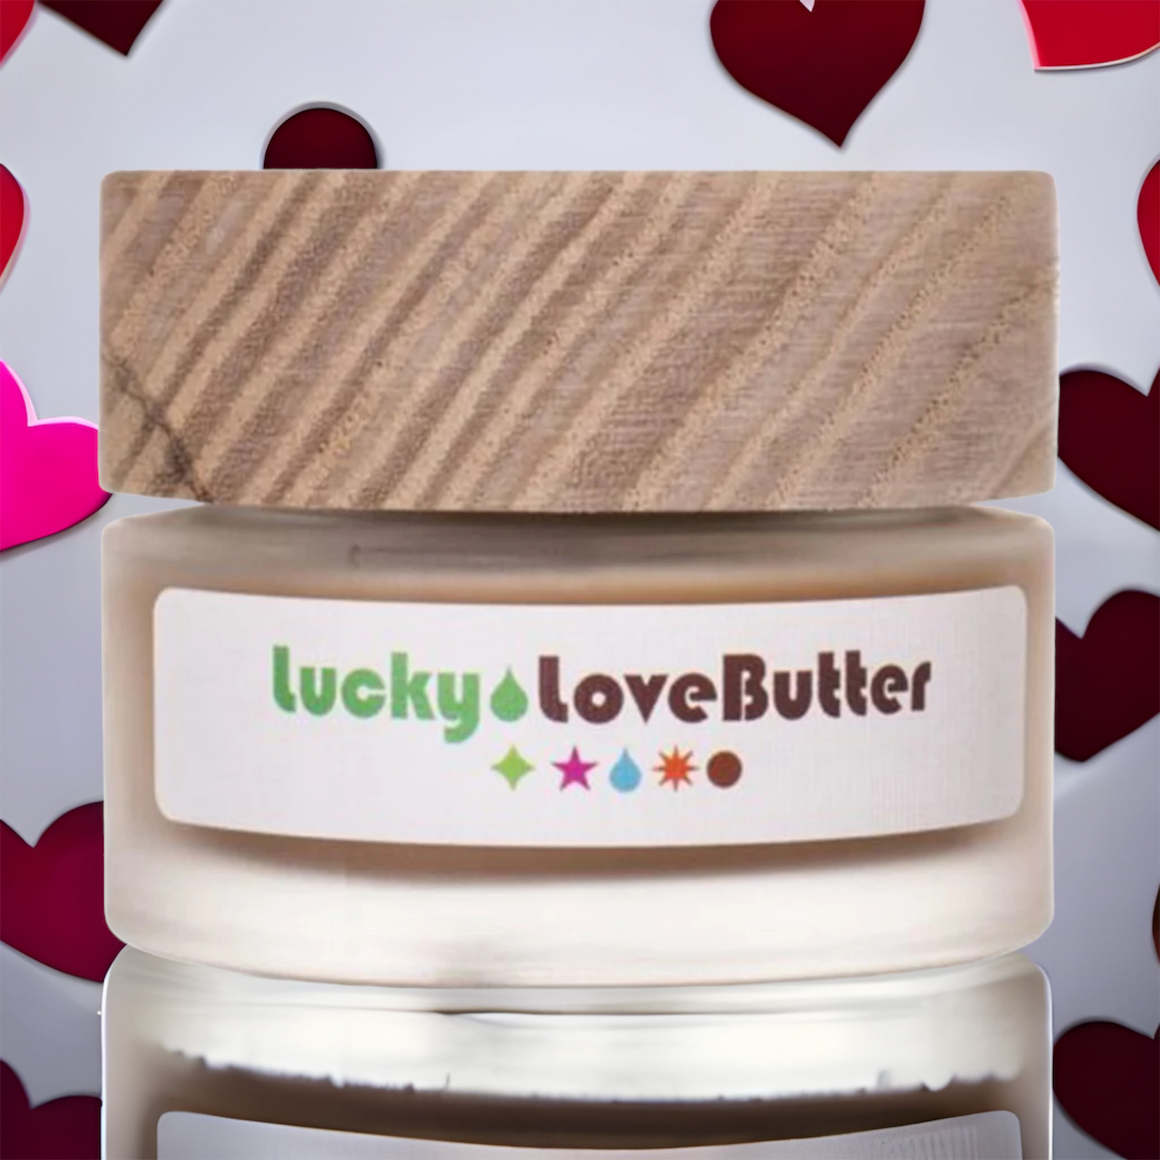 Lucky Love Butter